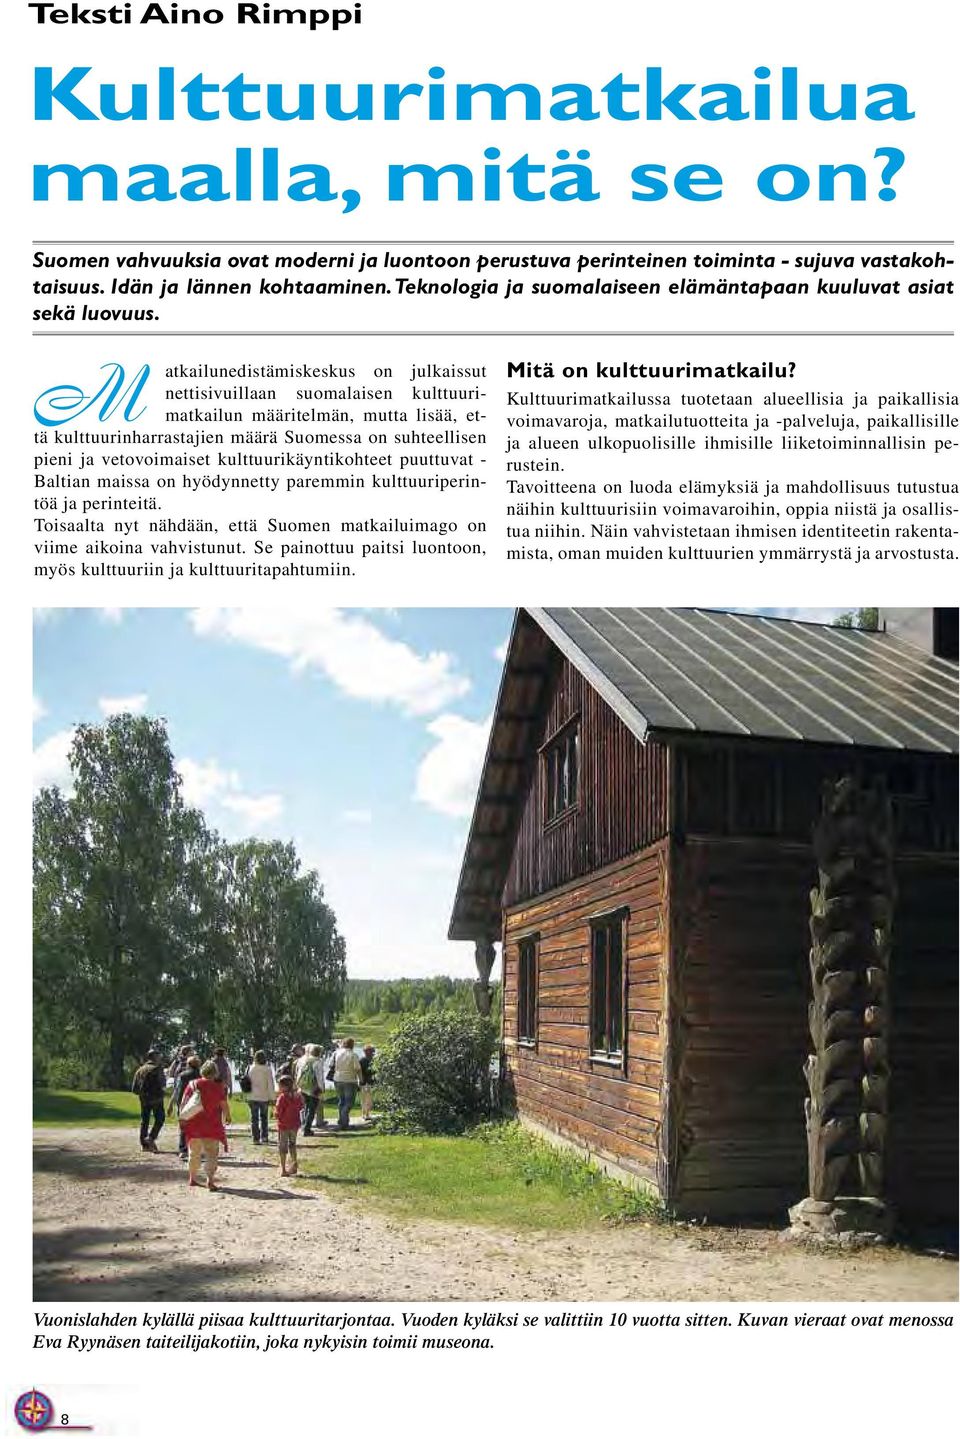 M atkailunedistämiskeskus on julkaissut nettisivuillaan suomalaisen kulttuurimatkailun määritelmän, mutta lisää, että kulttuurinharrastajien määrä Suomessa on suhteellisen pieni ja vetovoimaiset